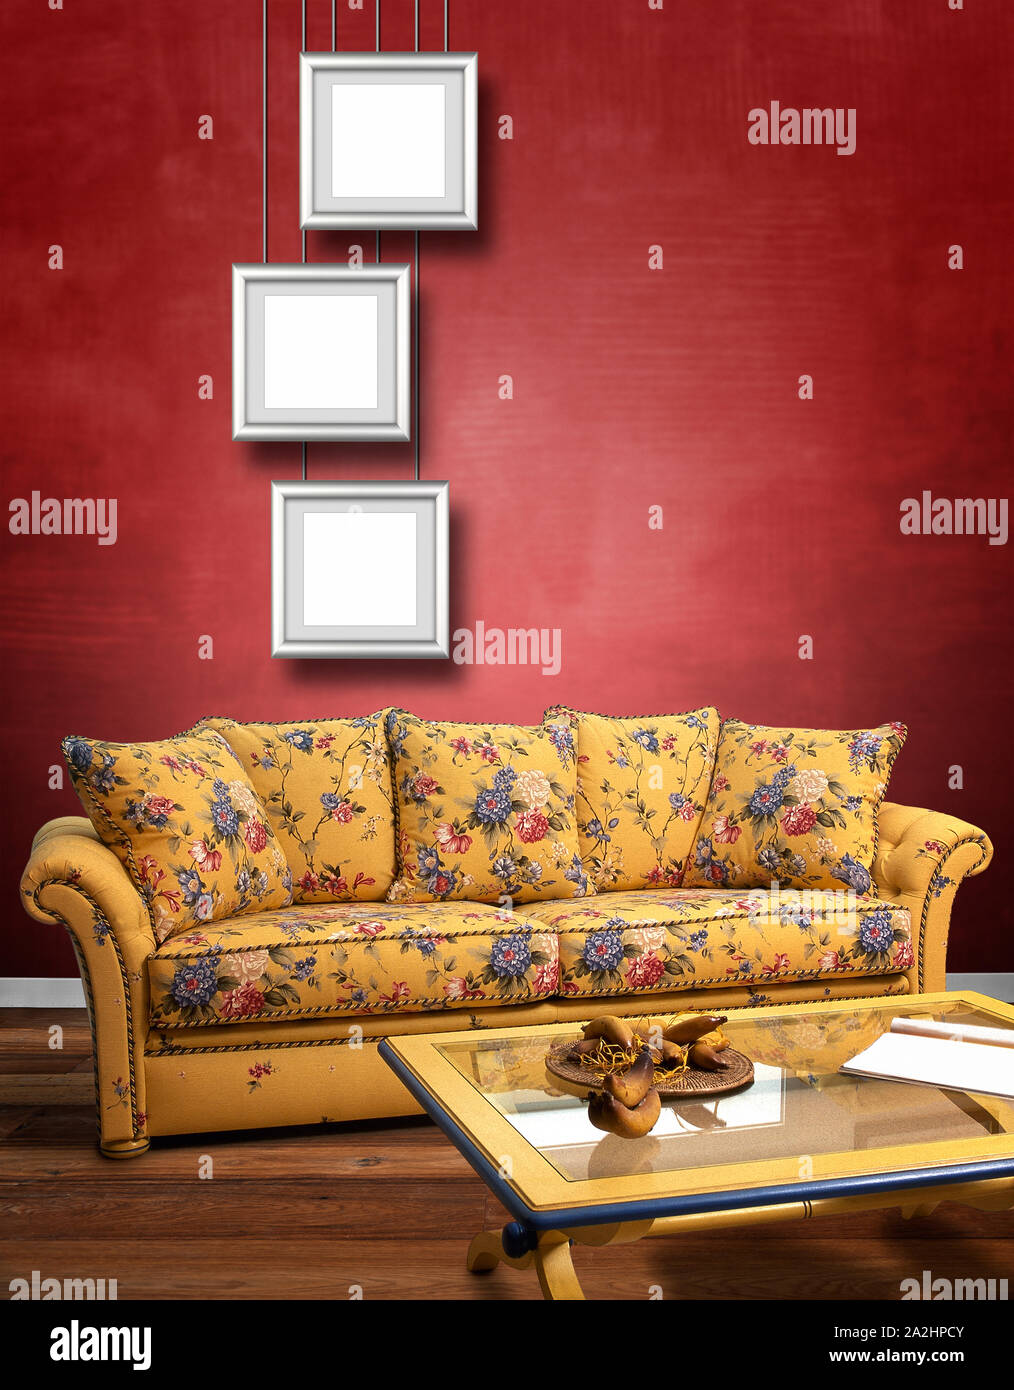 Moderne Einrichtung mit Sofa gegen strukturierte Rote Wand Stockfoto